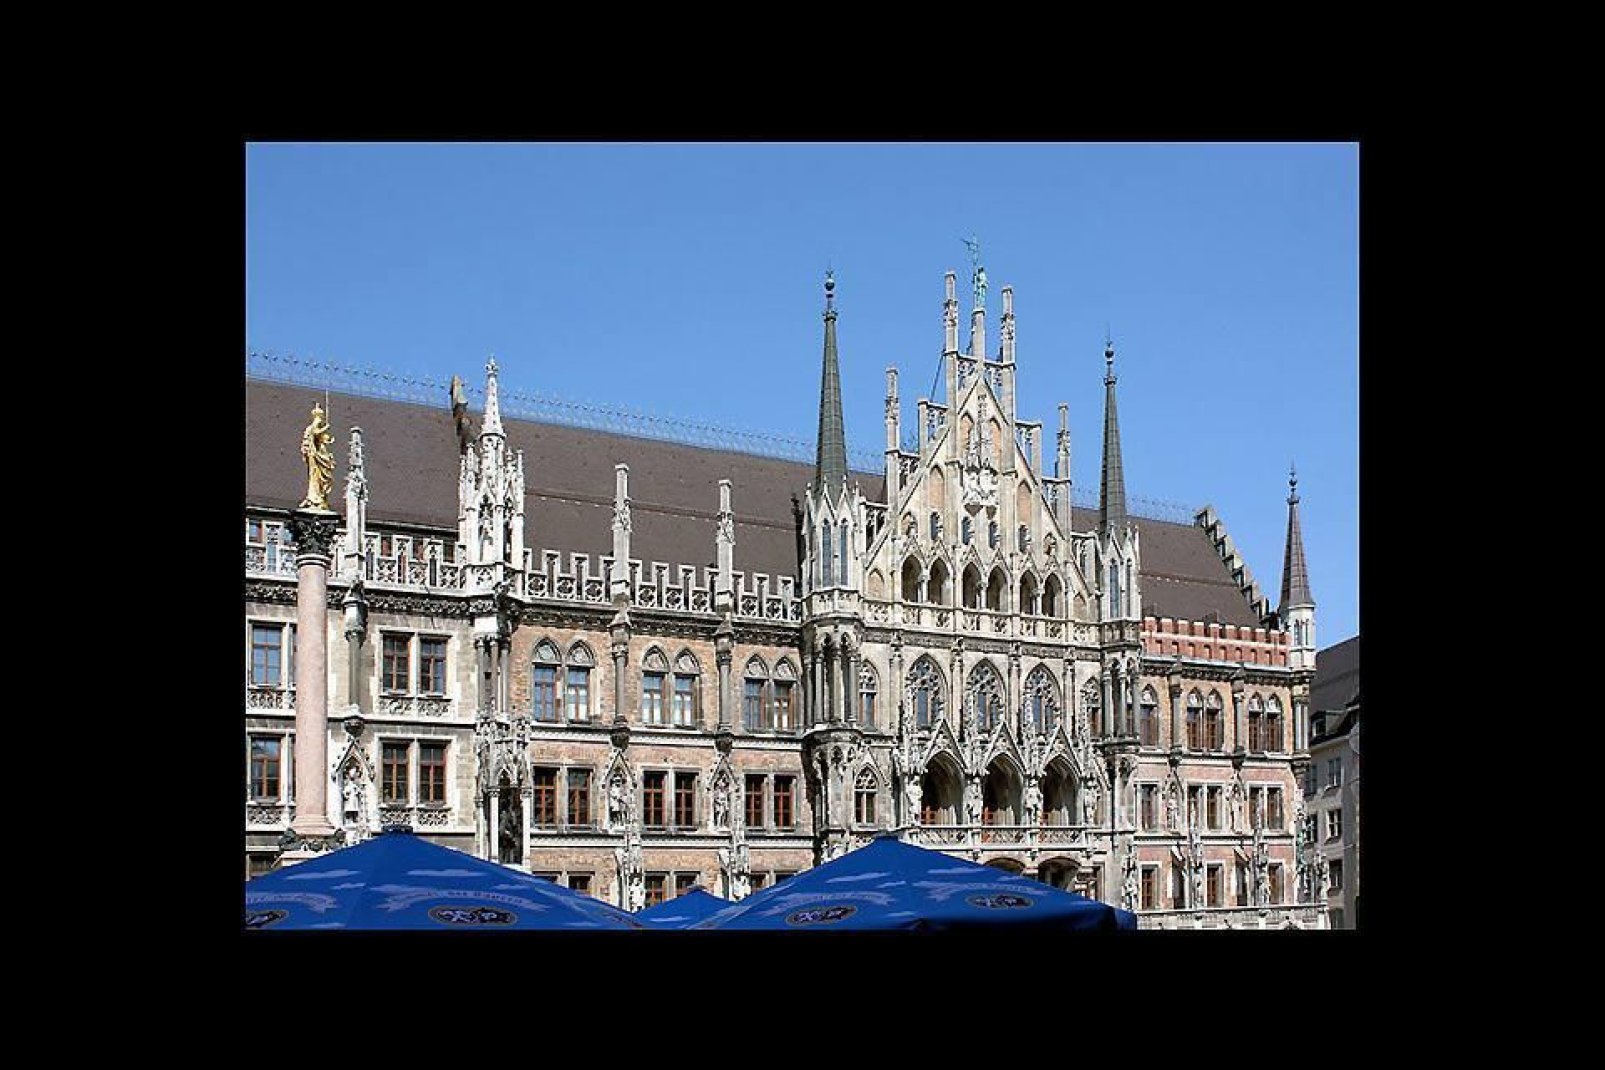 Dieses prachtvolle im neugotischen Stil erbaute Gebäude befindet sich am Marienplatz, der zentrale Platz  von München.